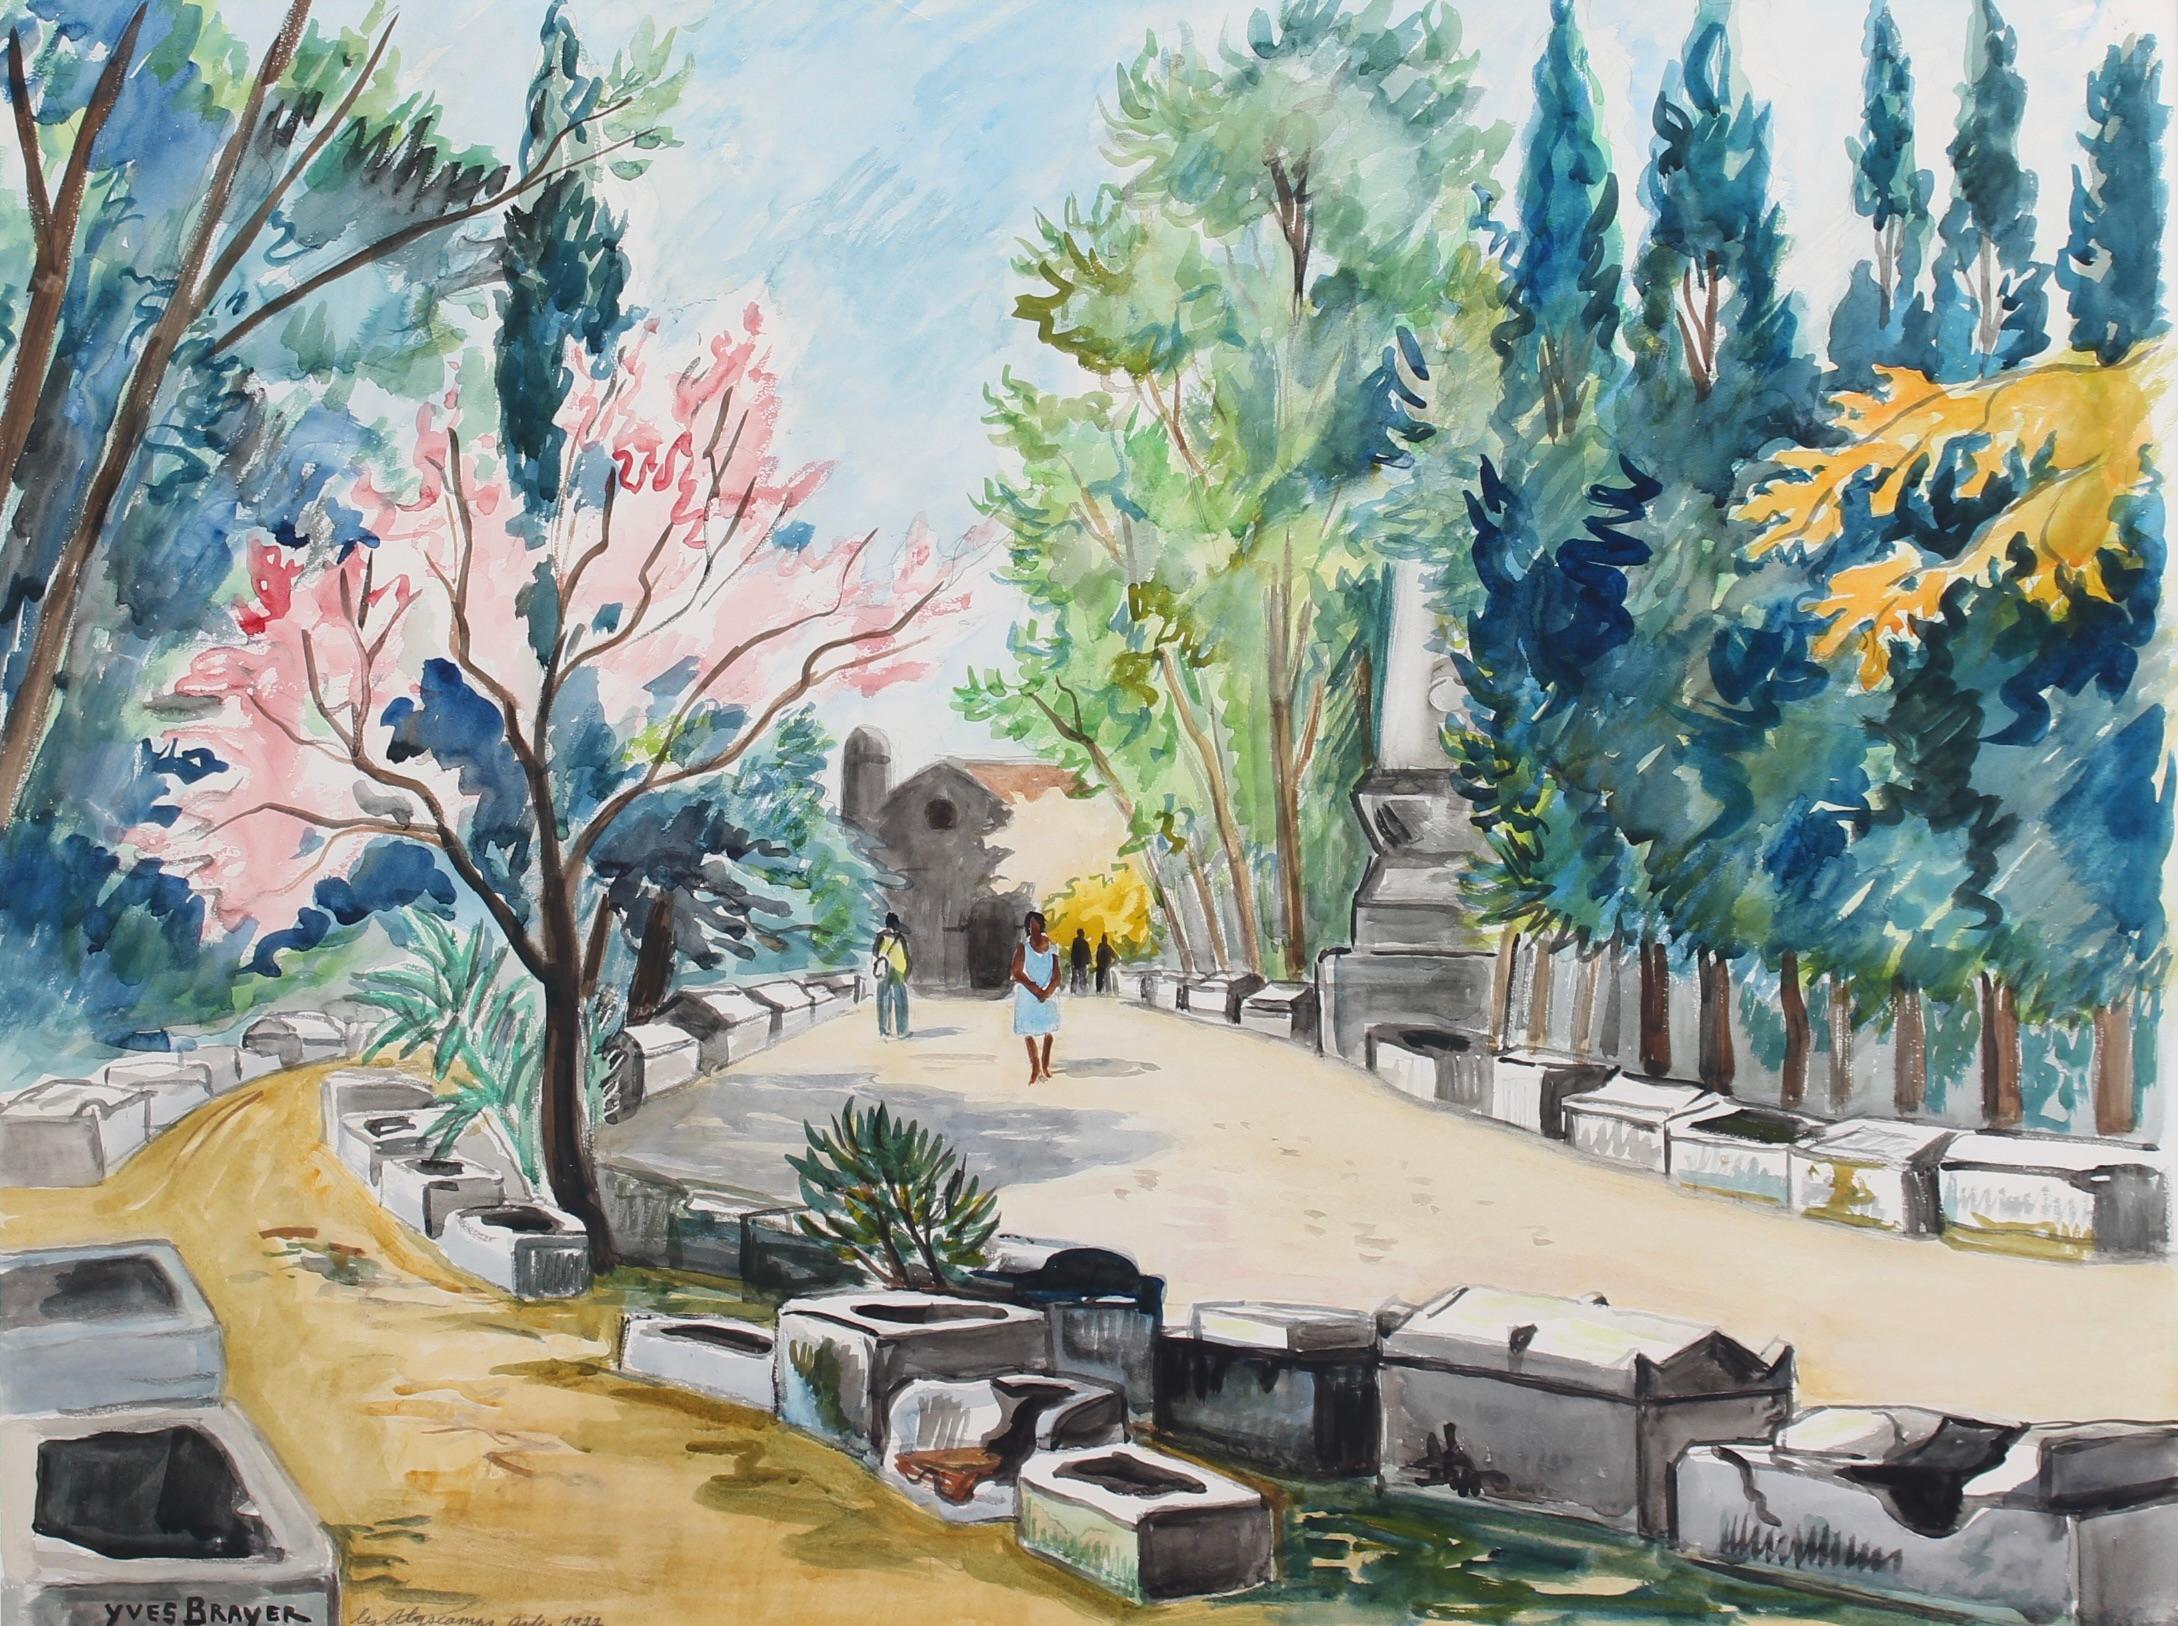 Les Alyscamps Arles, aquarelle sur papier d'art, par Yves Brayer (1977). Ce terme trouve son origine et son lien avec les Calle, également appelés Elysium, qui sont la dernière demeure des âmes des héroïques et des vertueux dans la mythologie et la